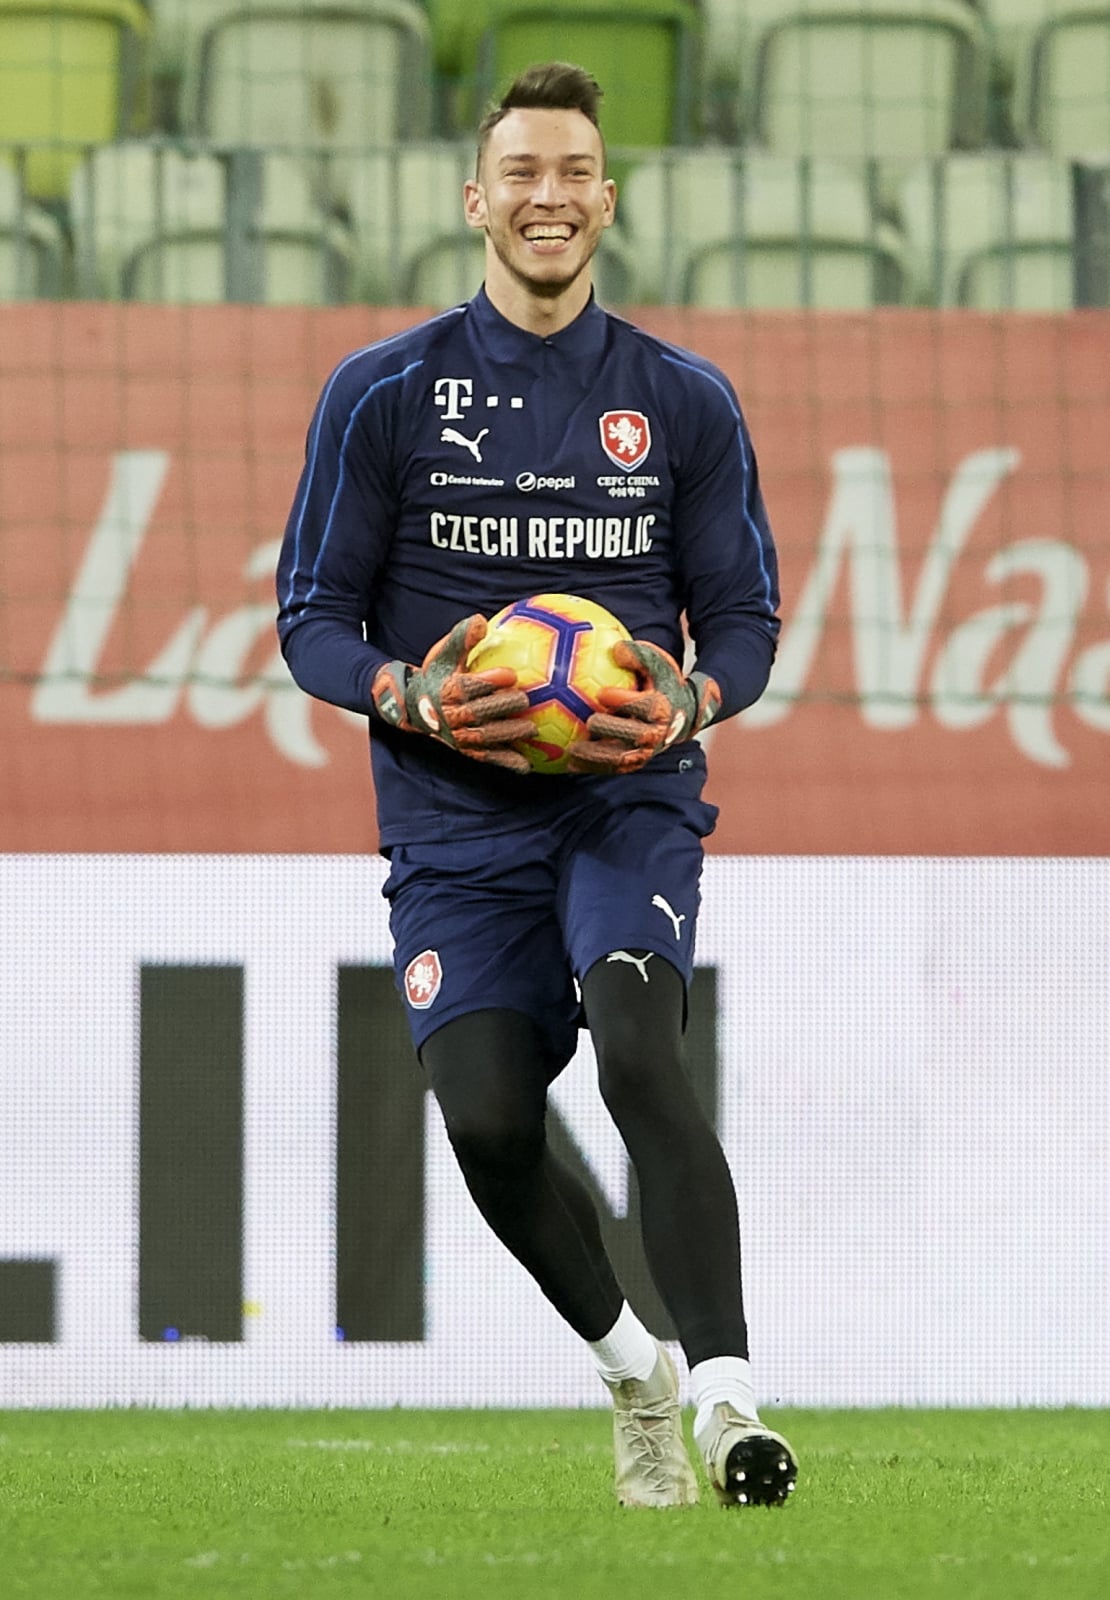 Bramkarz reprezentacji Czech Jiri Pavlenka, podczas treningu w Gdańsku, gdzie z drużyną przygotowuje się do towarzyskiego meczu z Polską.